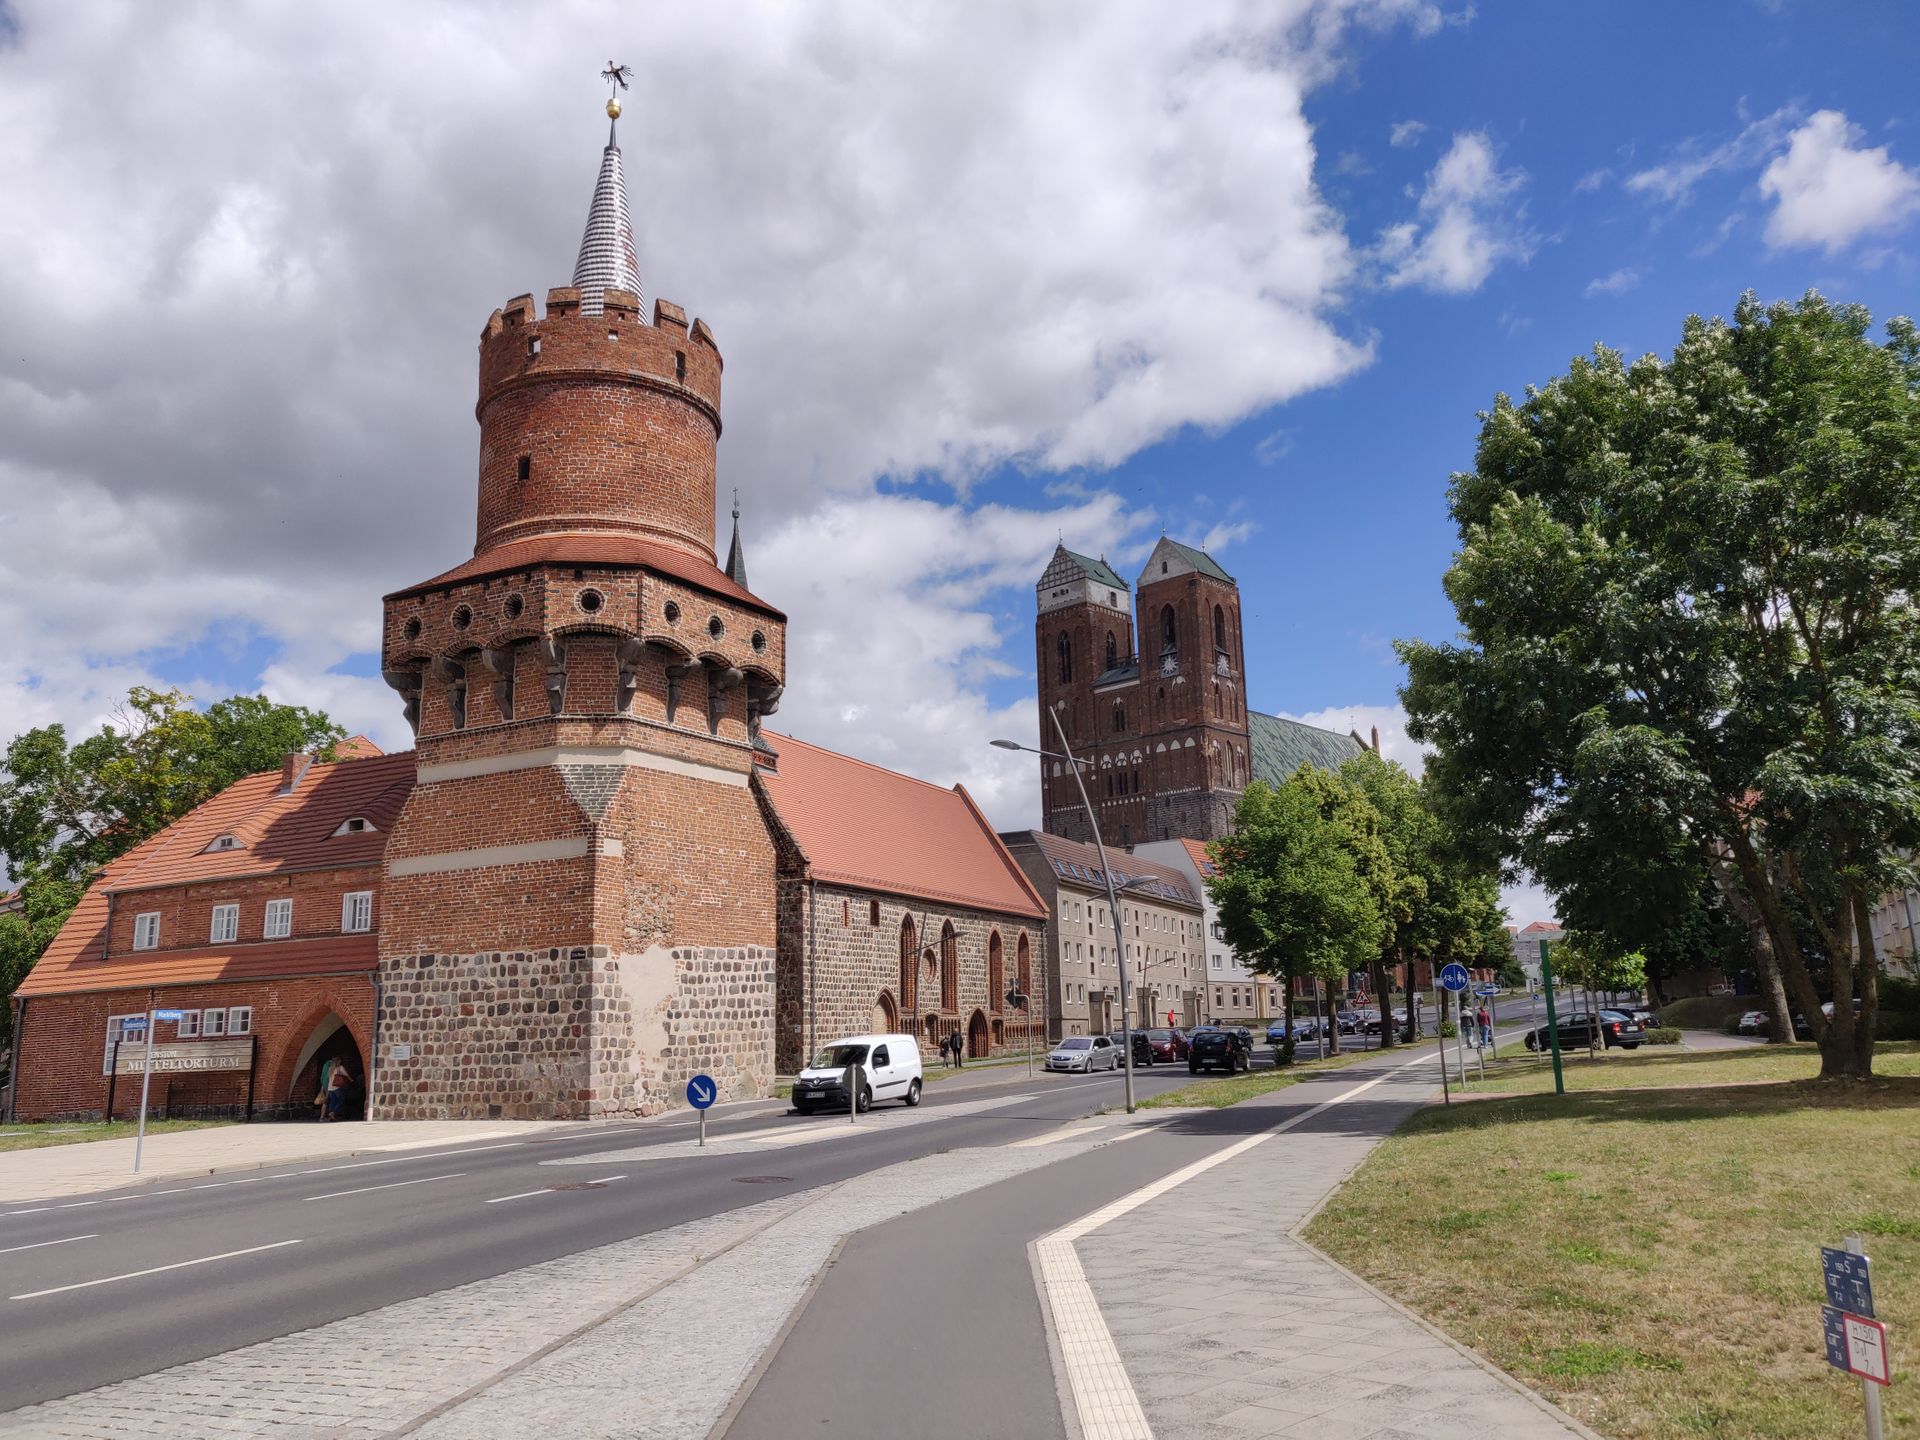 Route qui arrive à Prenzlau, vue sur une tour et sur l'église en fond